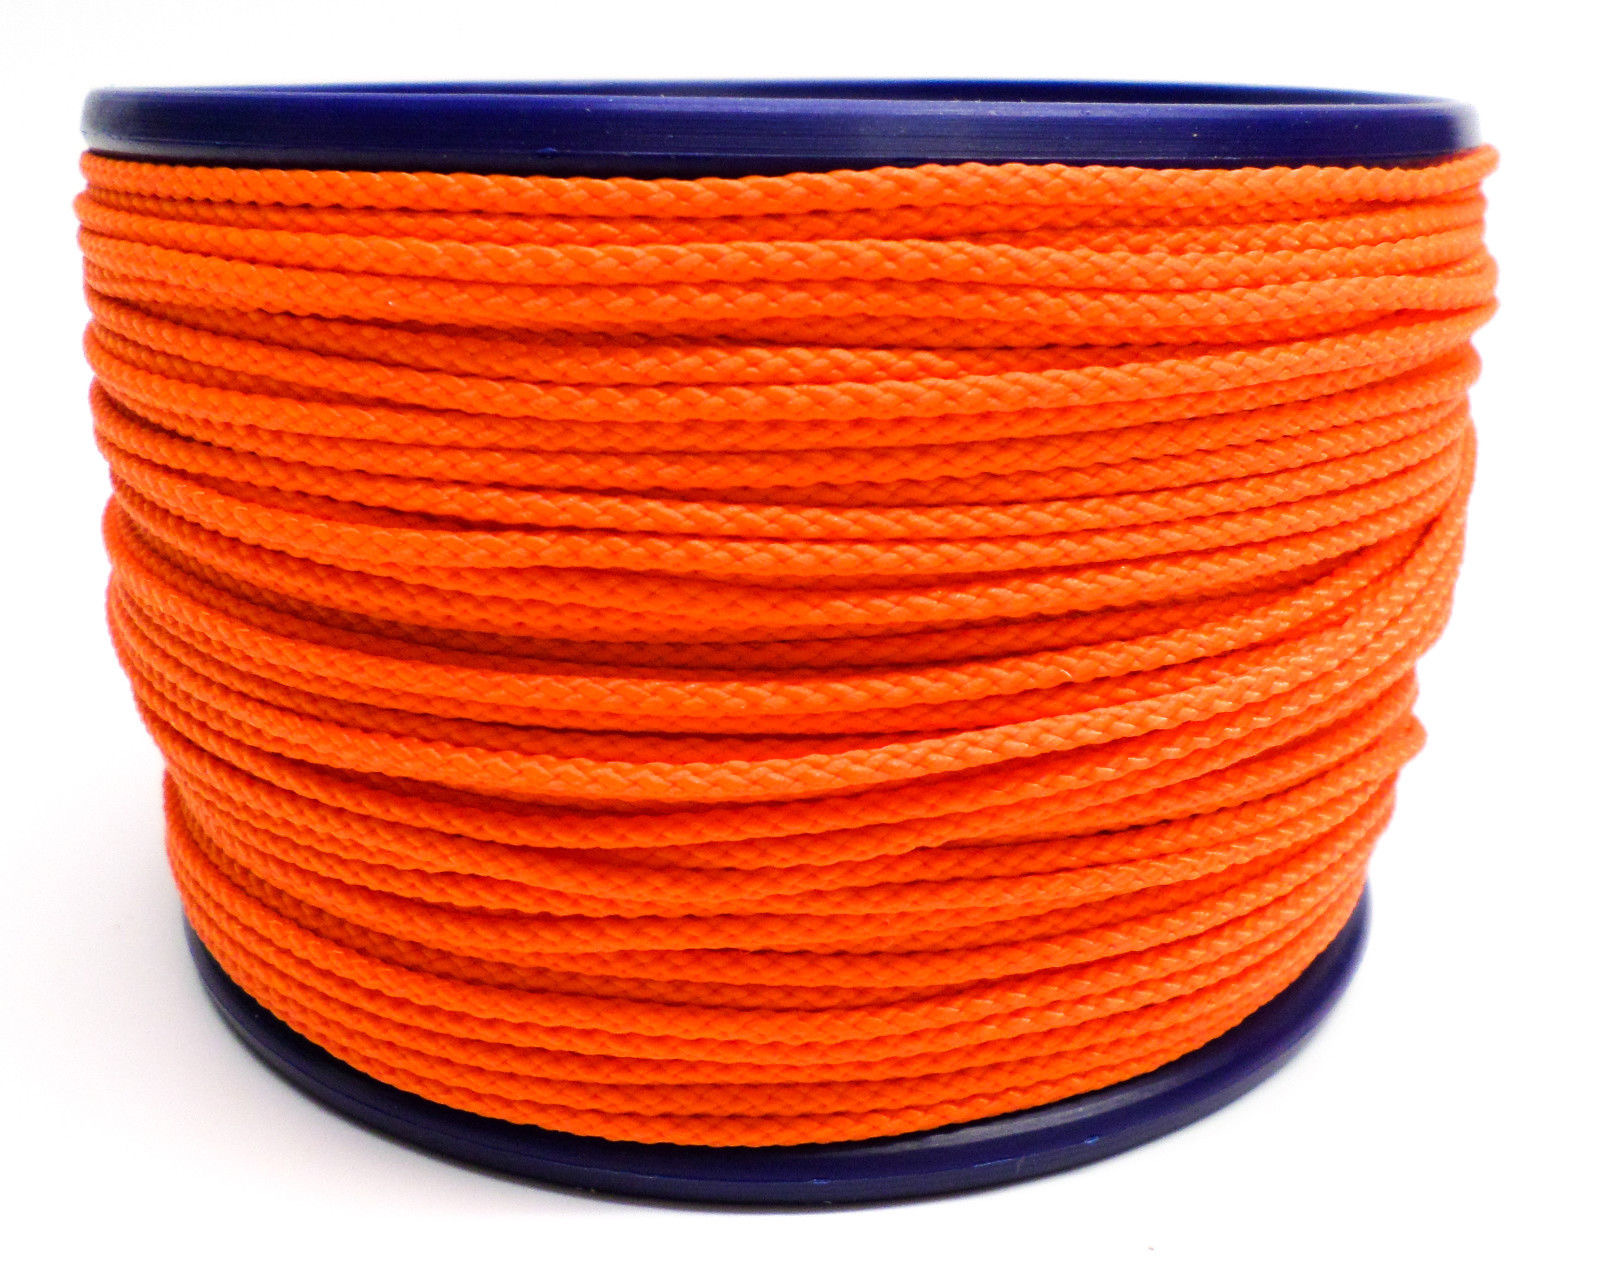 PPM gekleurd koord oranje 3mm 10meter